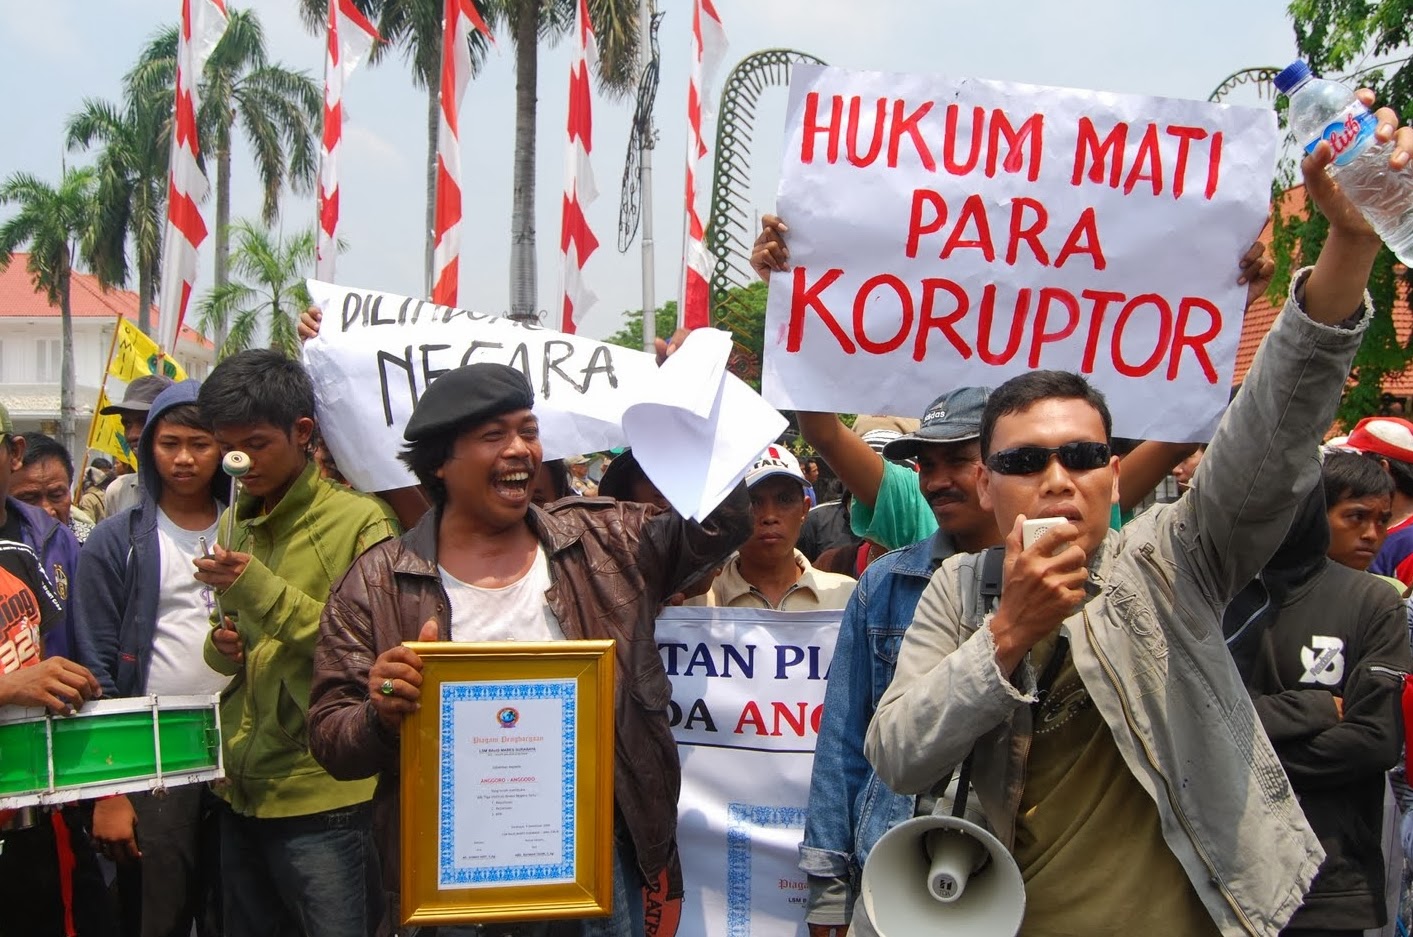 Upaya Penegakan Hukum dan HAM di Indonesia - Zakipedia